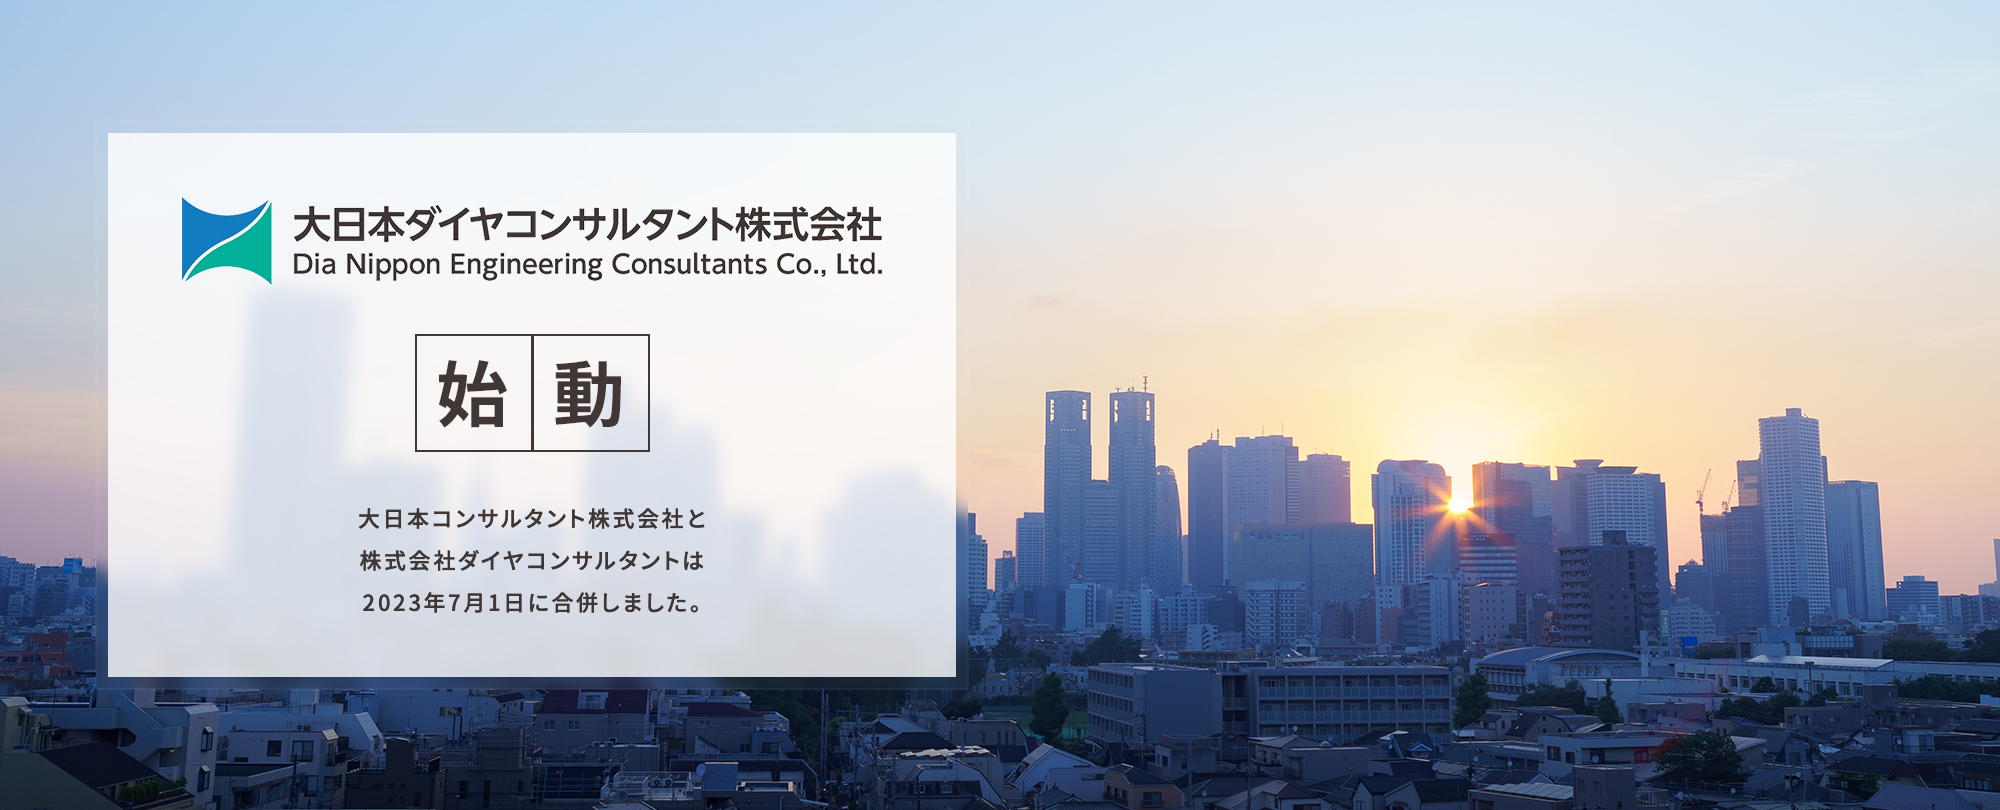 大日本コンサルタント株式会社と株式会社ダイヤコンサルタントは2023年7月に合併しました